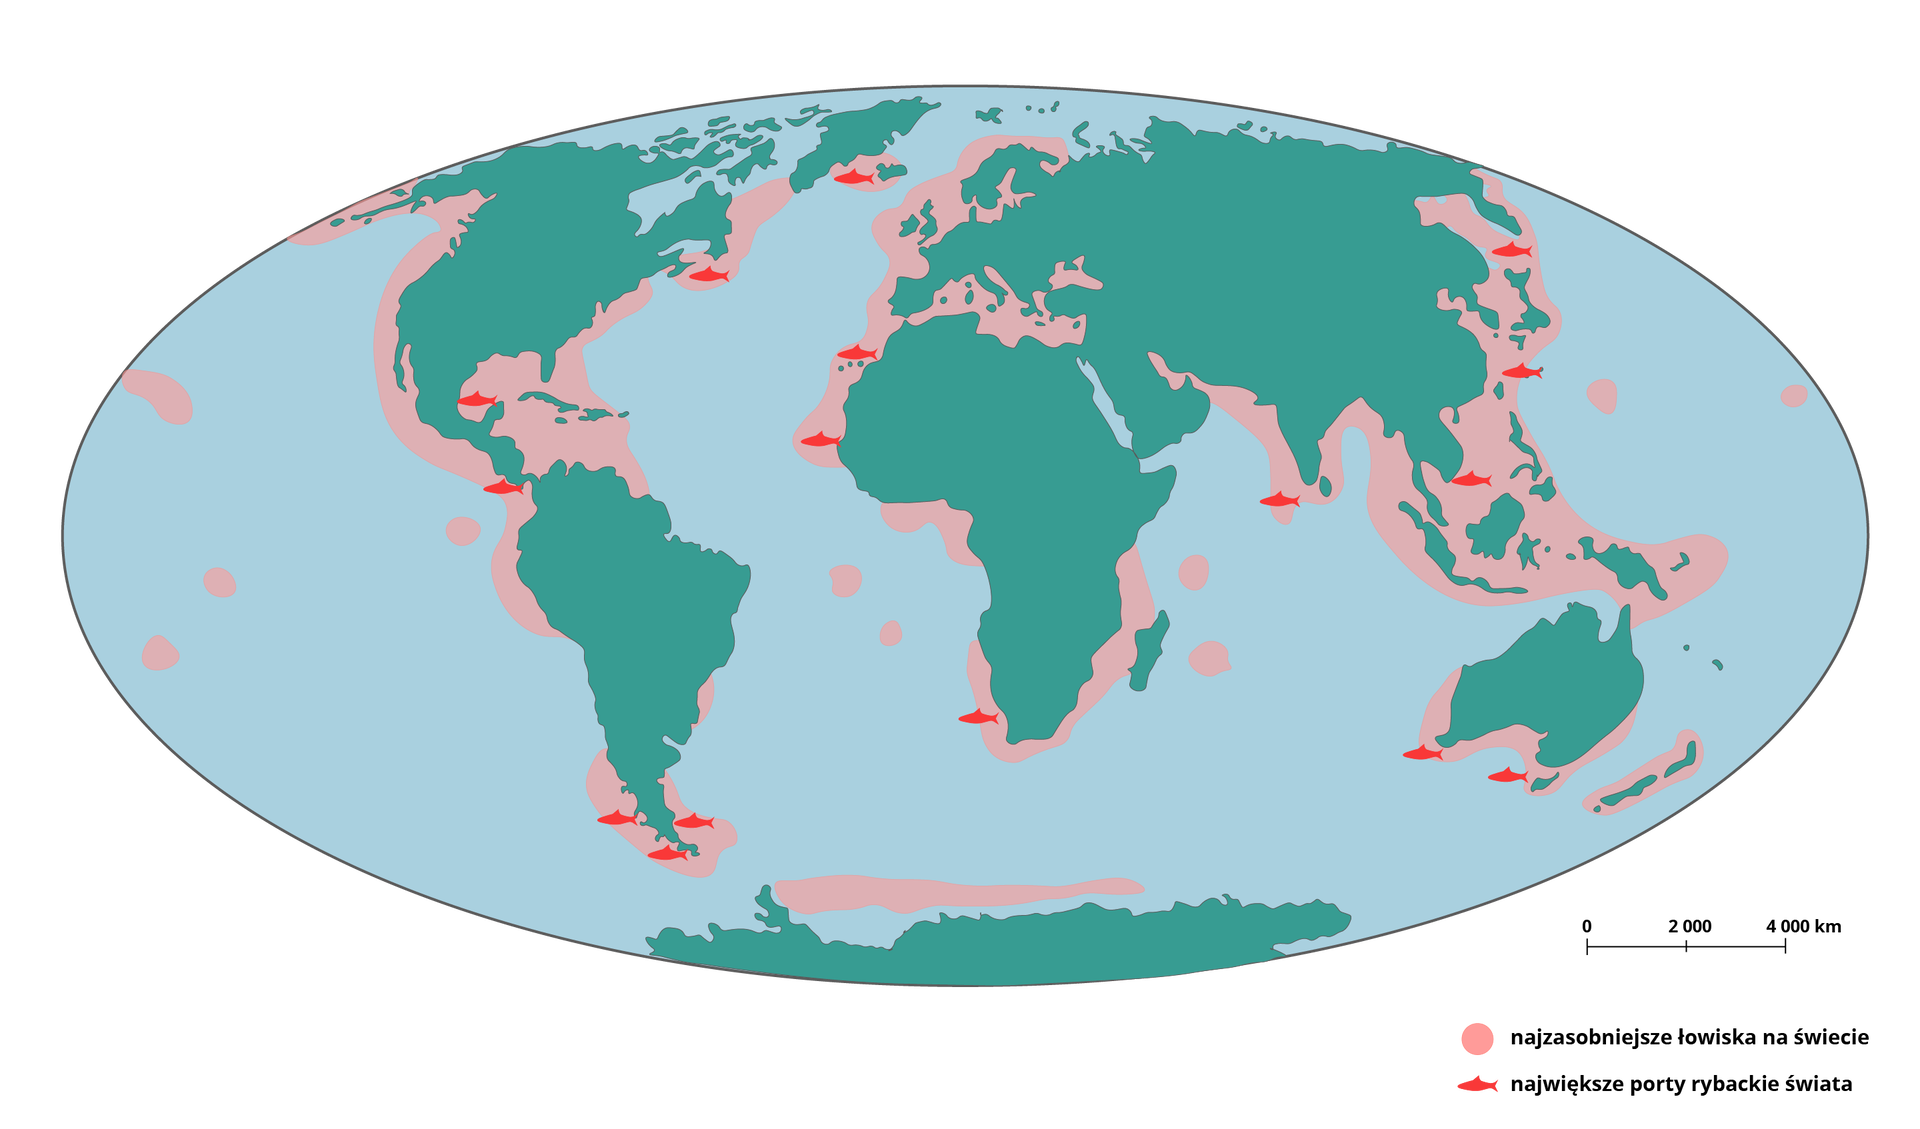 Mapa przedstawia obszary rybołówstwa morskiego. Obszary te są zaznaczone na niebiesko. Są to głównie wybrzeża kontynentów oraz okolice archipelagów tj. Hawaje, Nowa Zelandii czy wyspy w okolicach Indonezji. Duży obszar znajduje się równolegle na północ od Antarktydy, jak i pomiędzy Islandią, a Grenlandią. Obszarami łowiskowymi są morza: Śródziemne, Czarne i Bałtyckie.